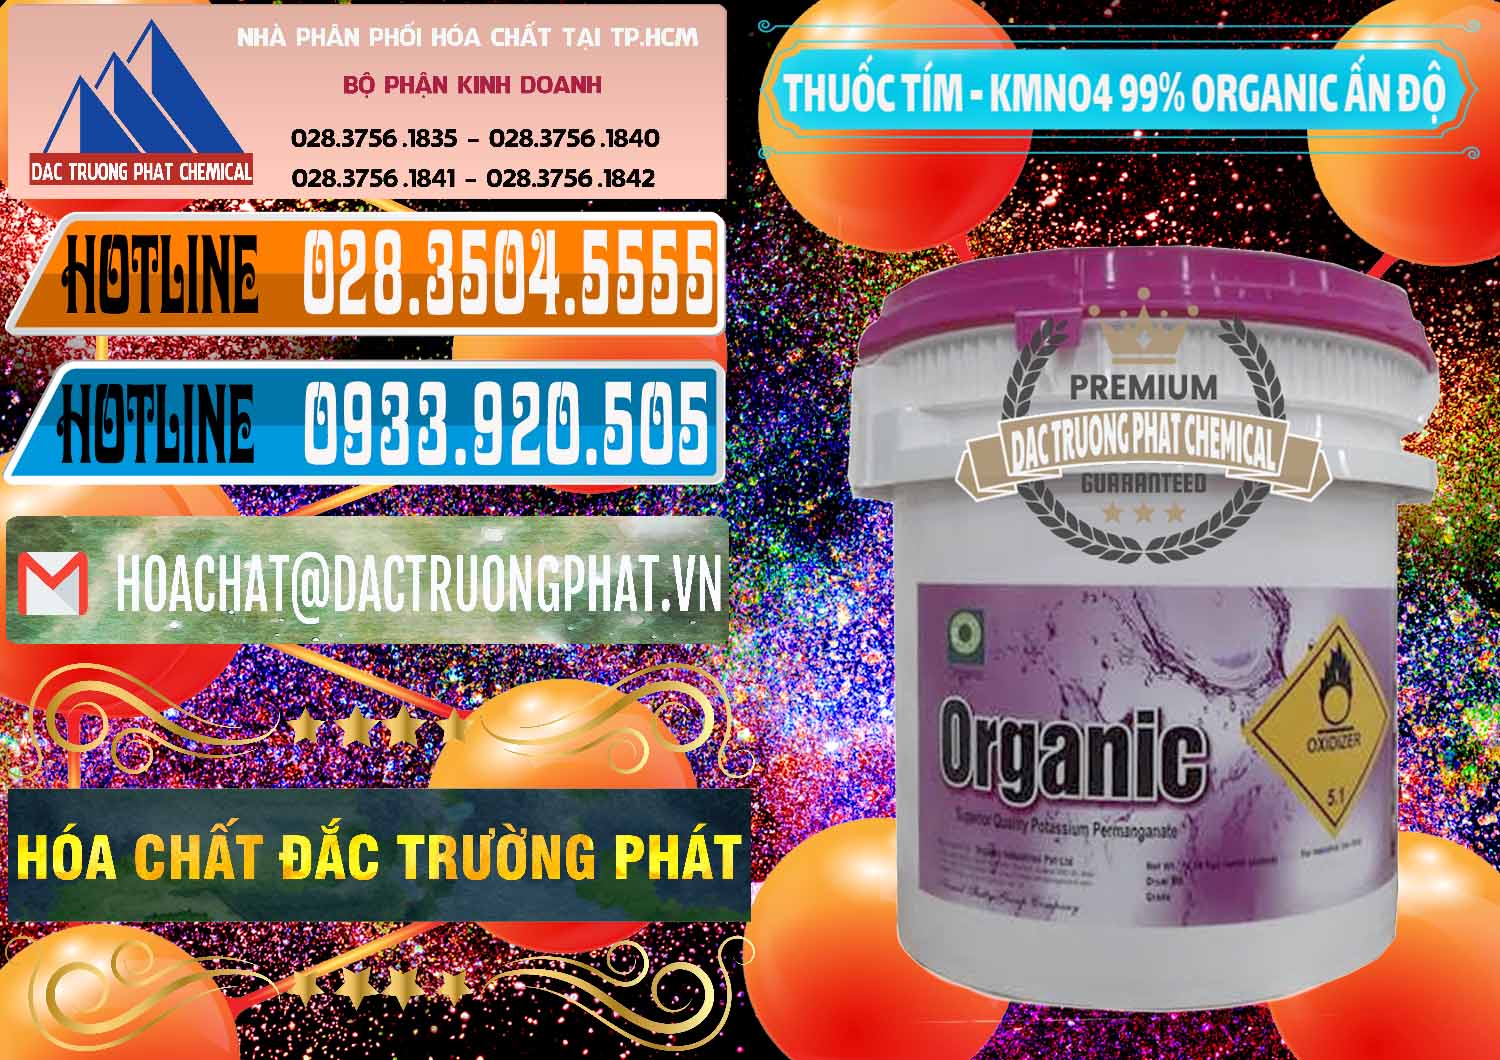 Cty kinh doanh và bán Thuốc Tím - KMNO4 99% Organic Ấn Độ India - 0216 - Nơi phân phối & kinh doanh hóa chất tại TP.HCM - stmp.net